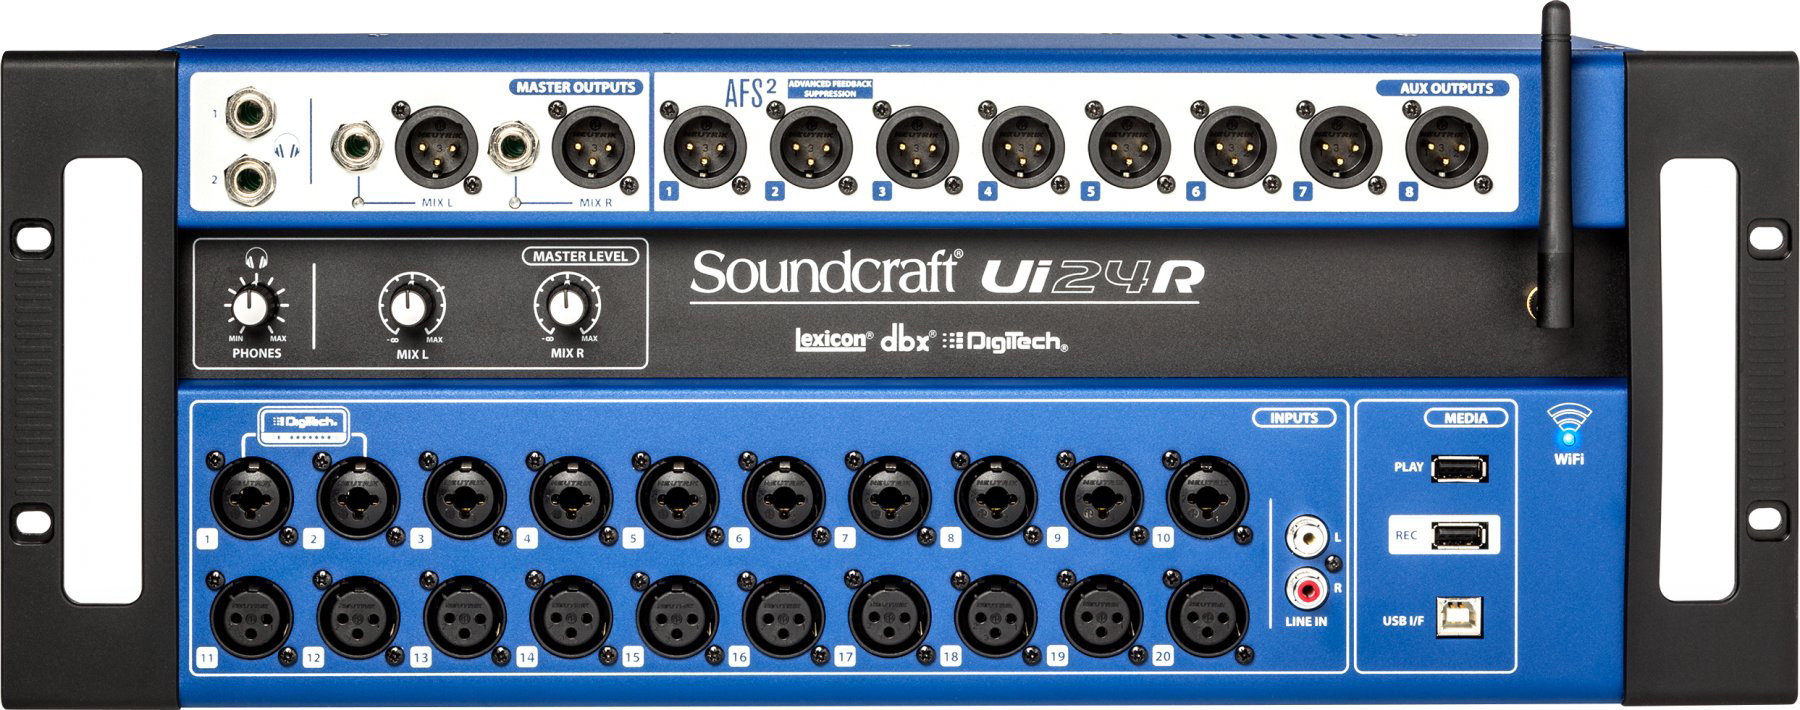 Soundcraft Ui 24 R